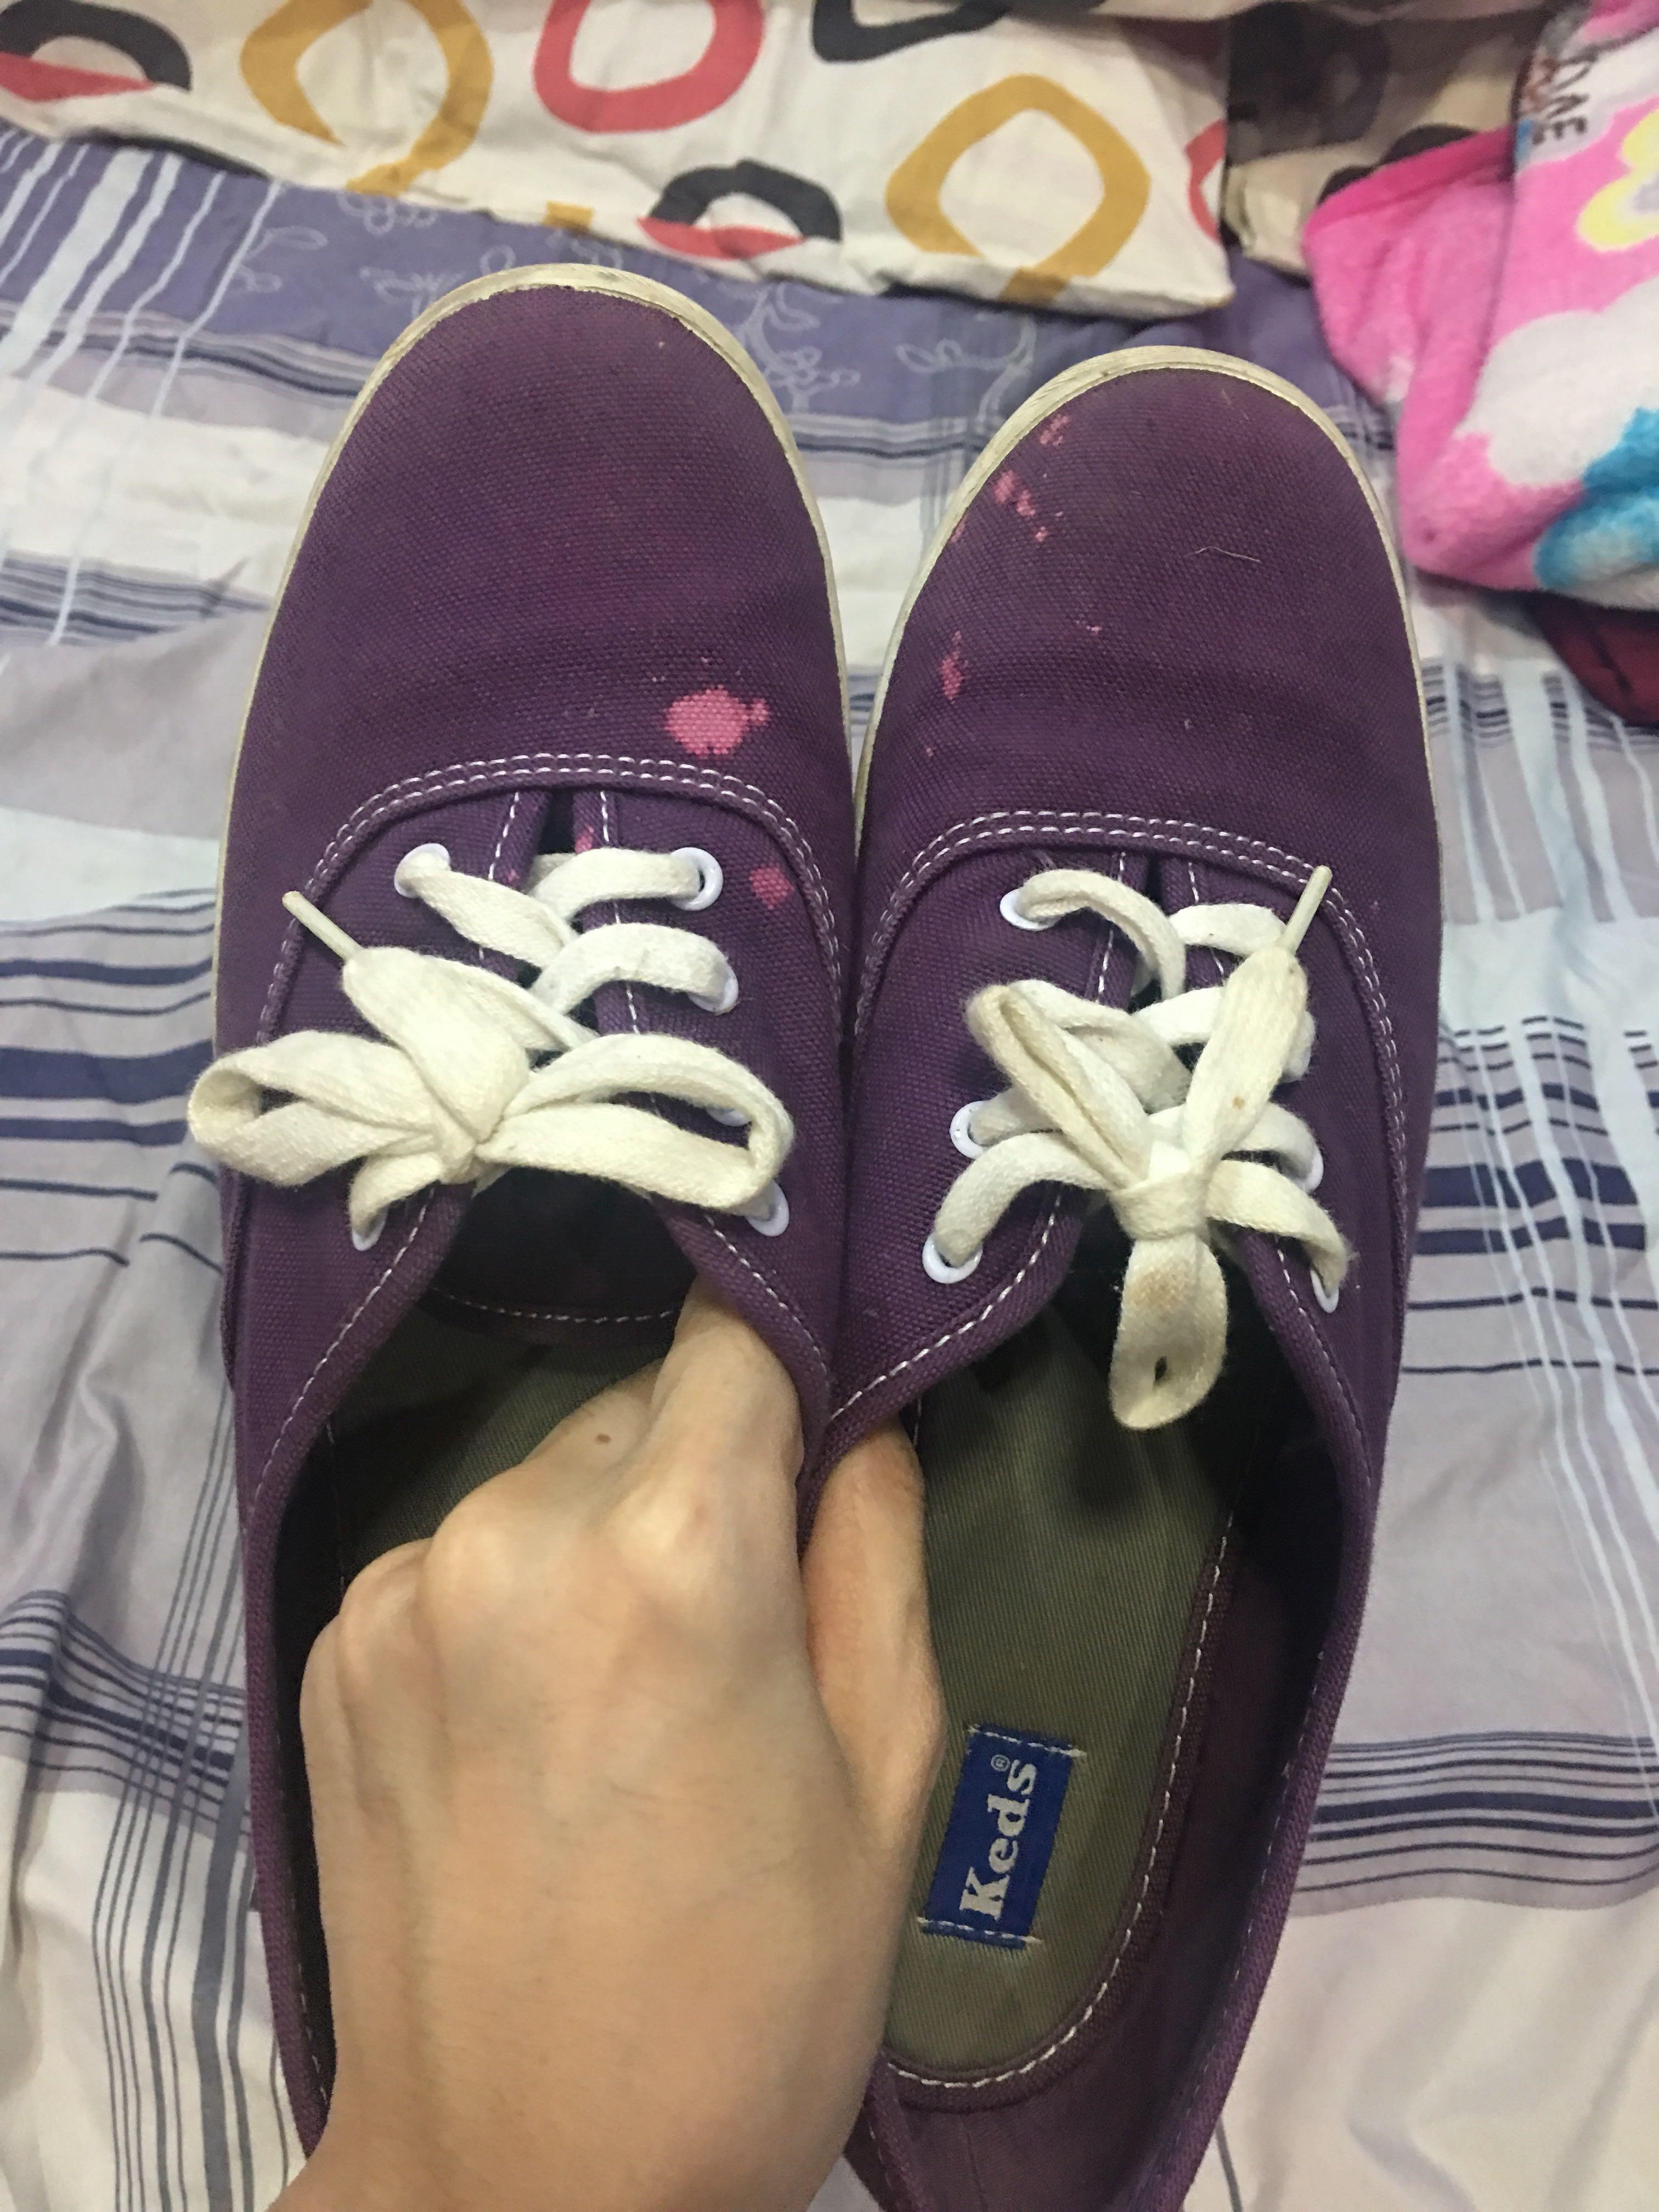 keds purple sneakers